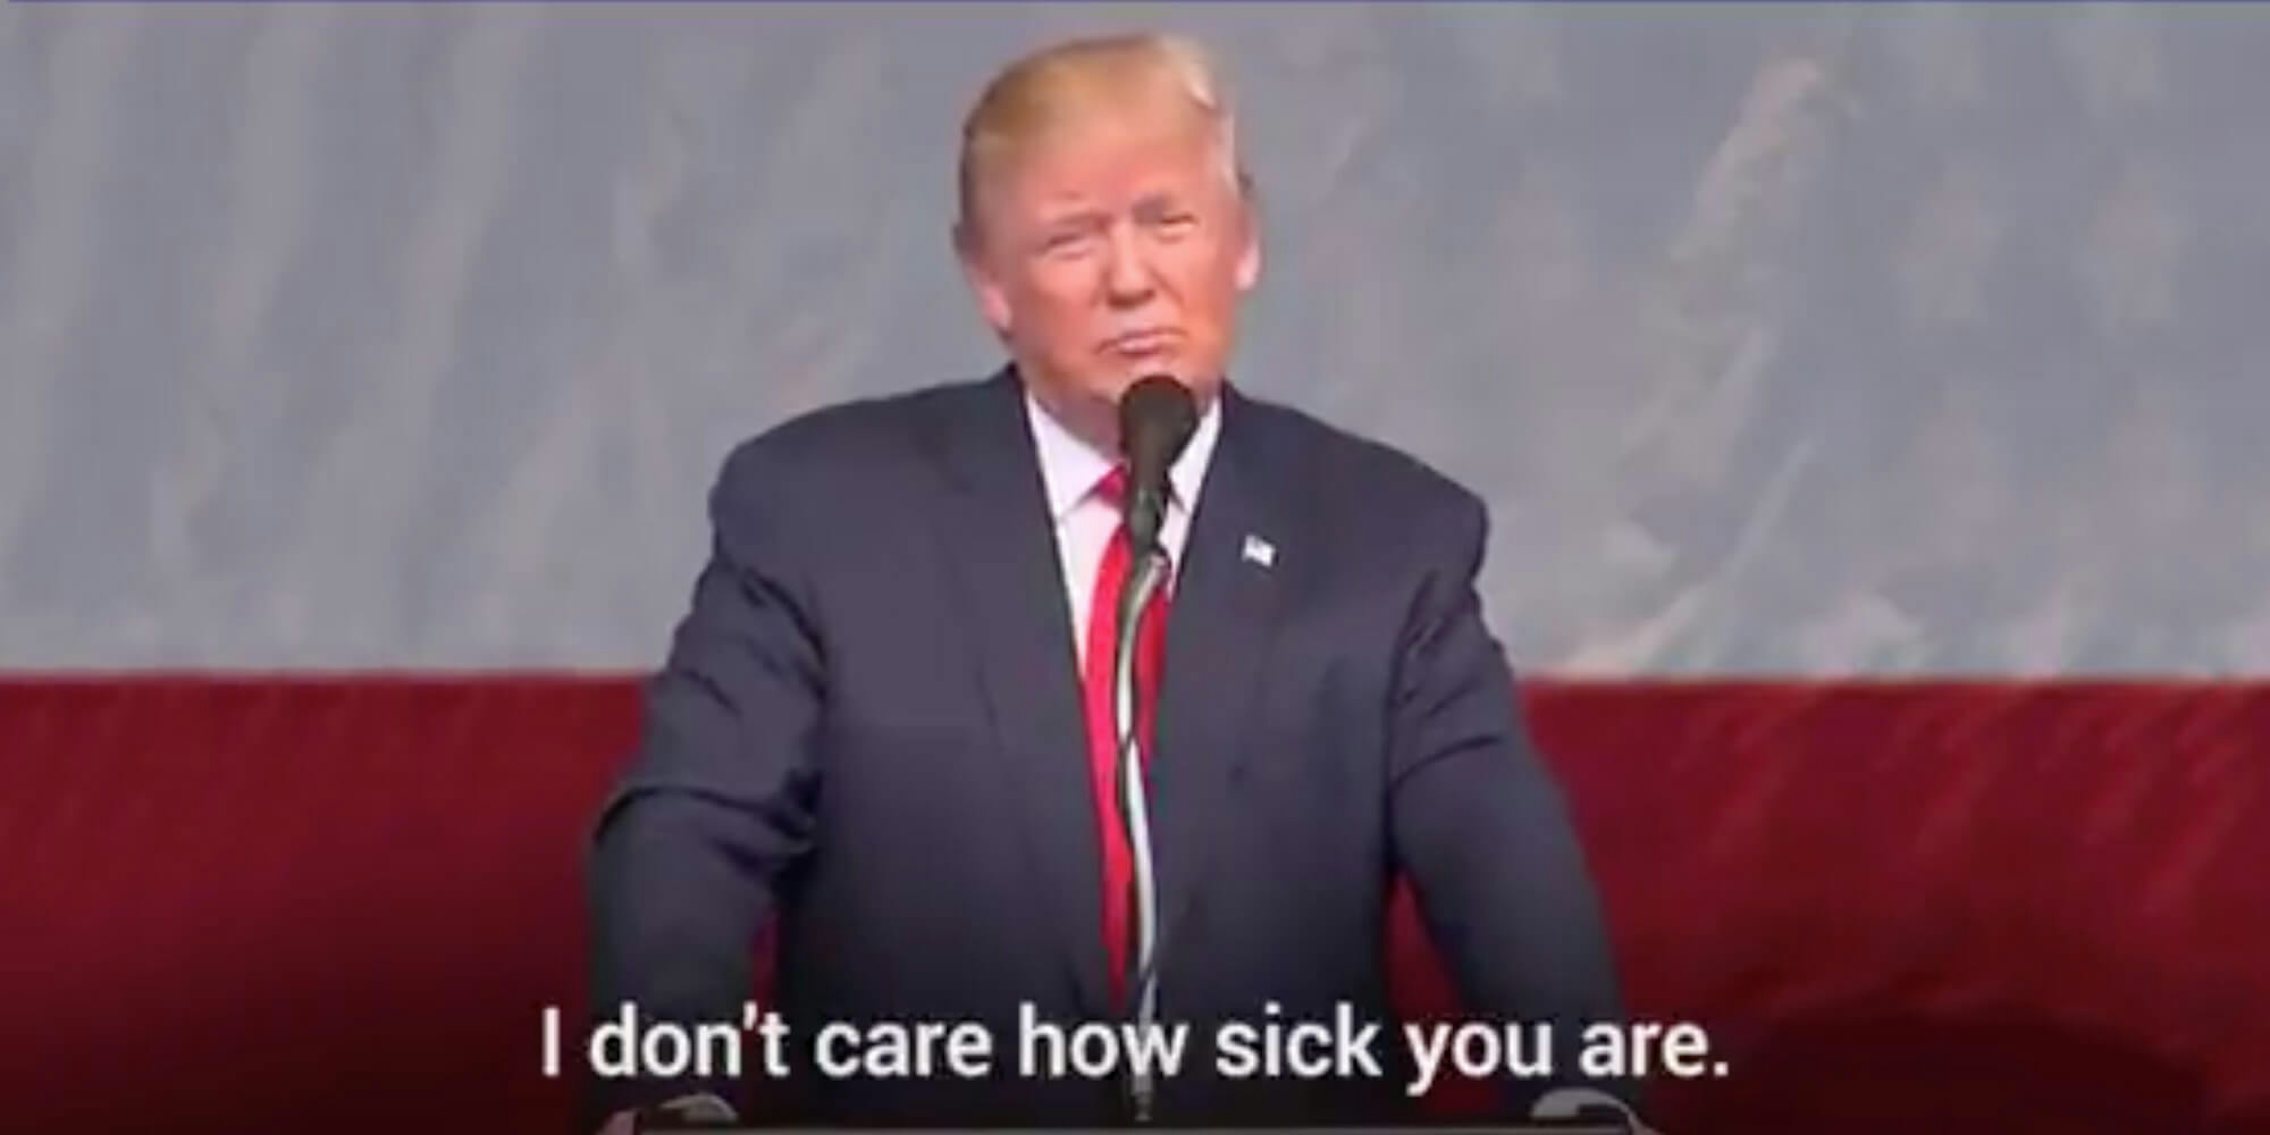 Donald Trump giving a speech next to text